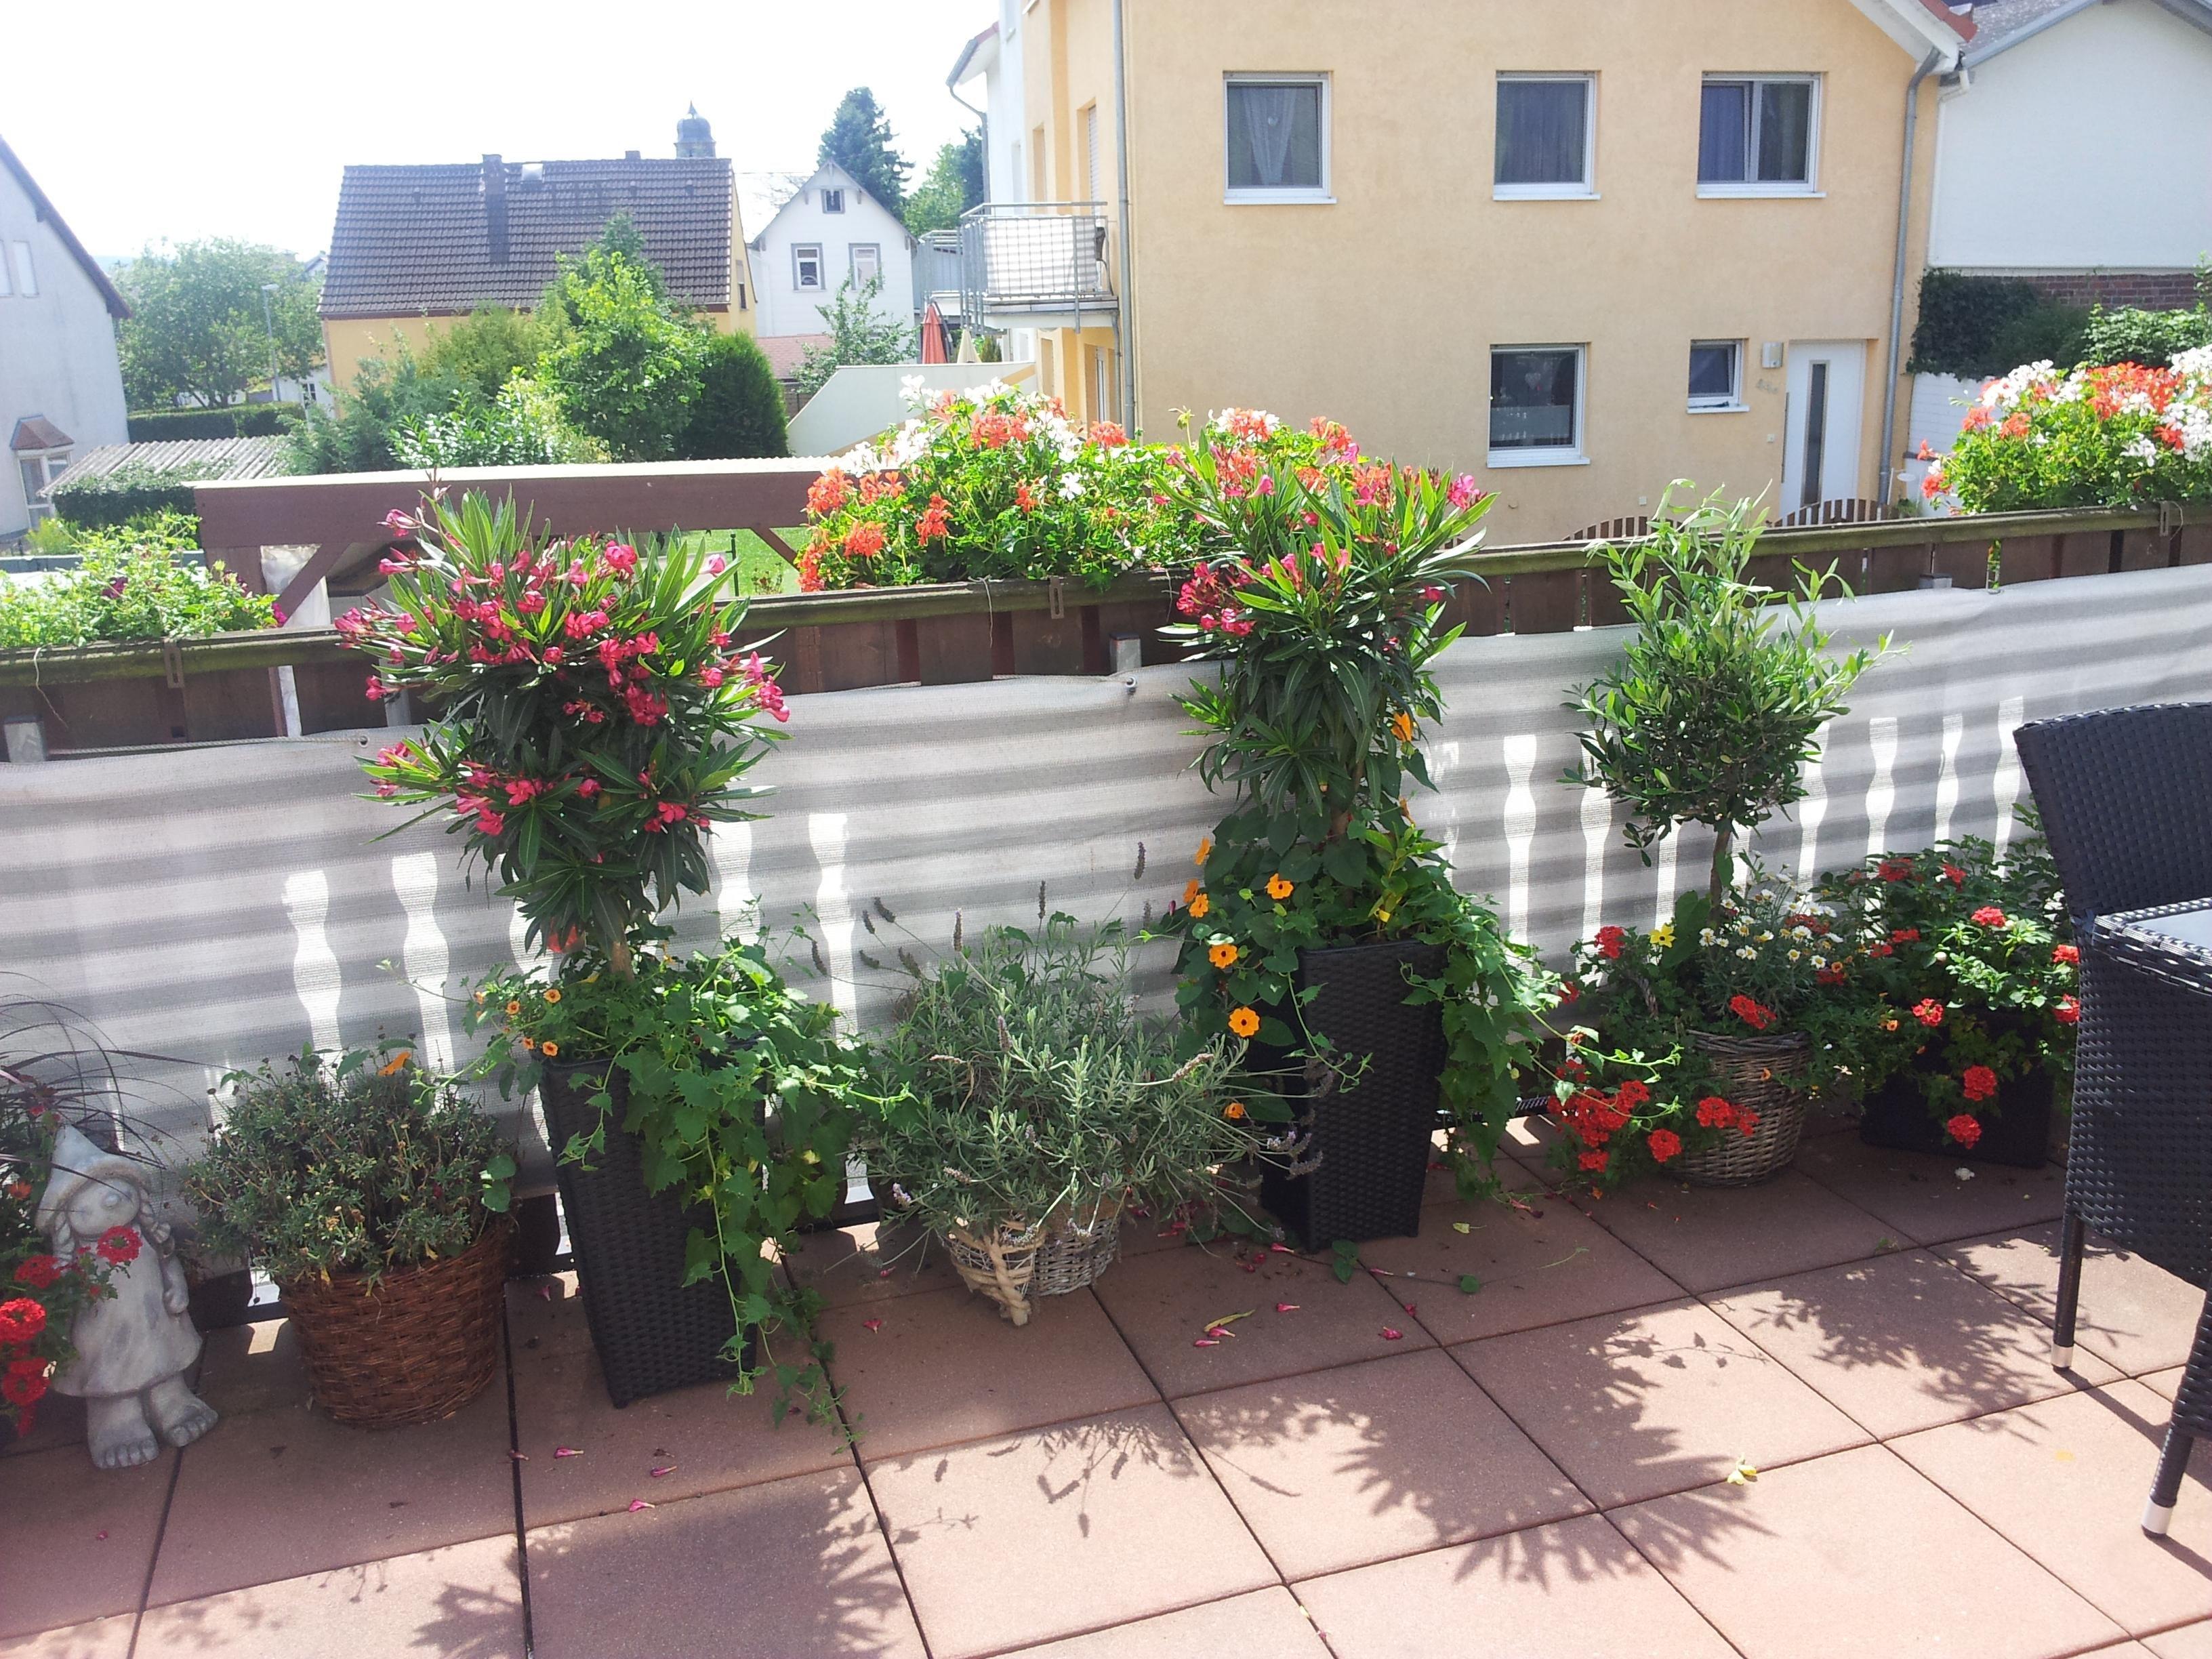 #meinbalkon So sah mein Balkon vor einigen Jahren aus leider sind mir in den harten Winter alle Pflanzen kaputt gegangen